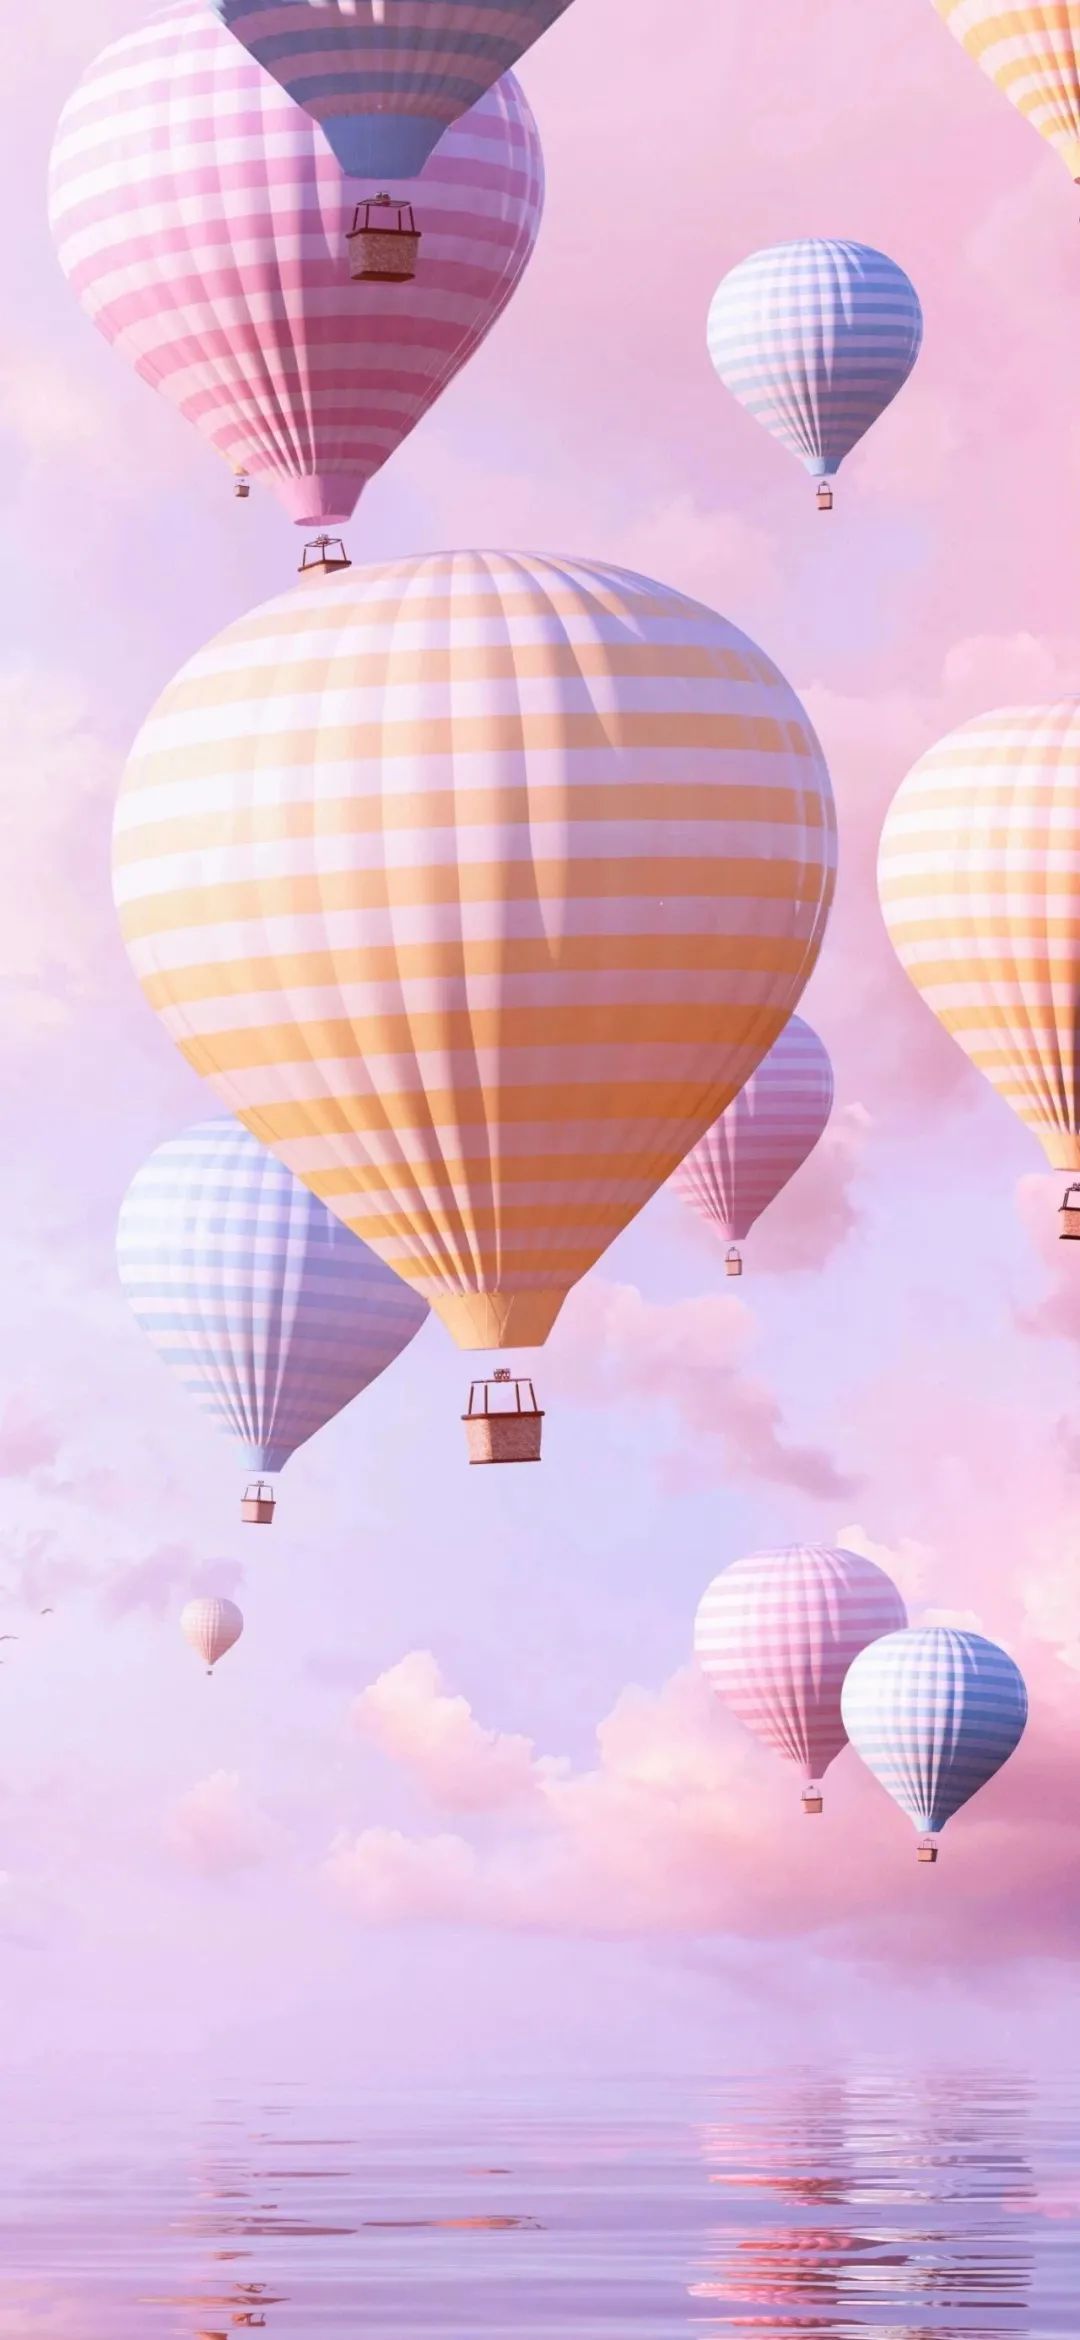 热气球群粉色天空浪漫手机壁纸